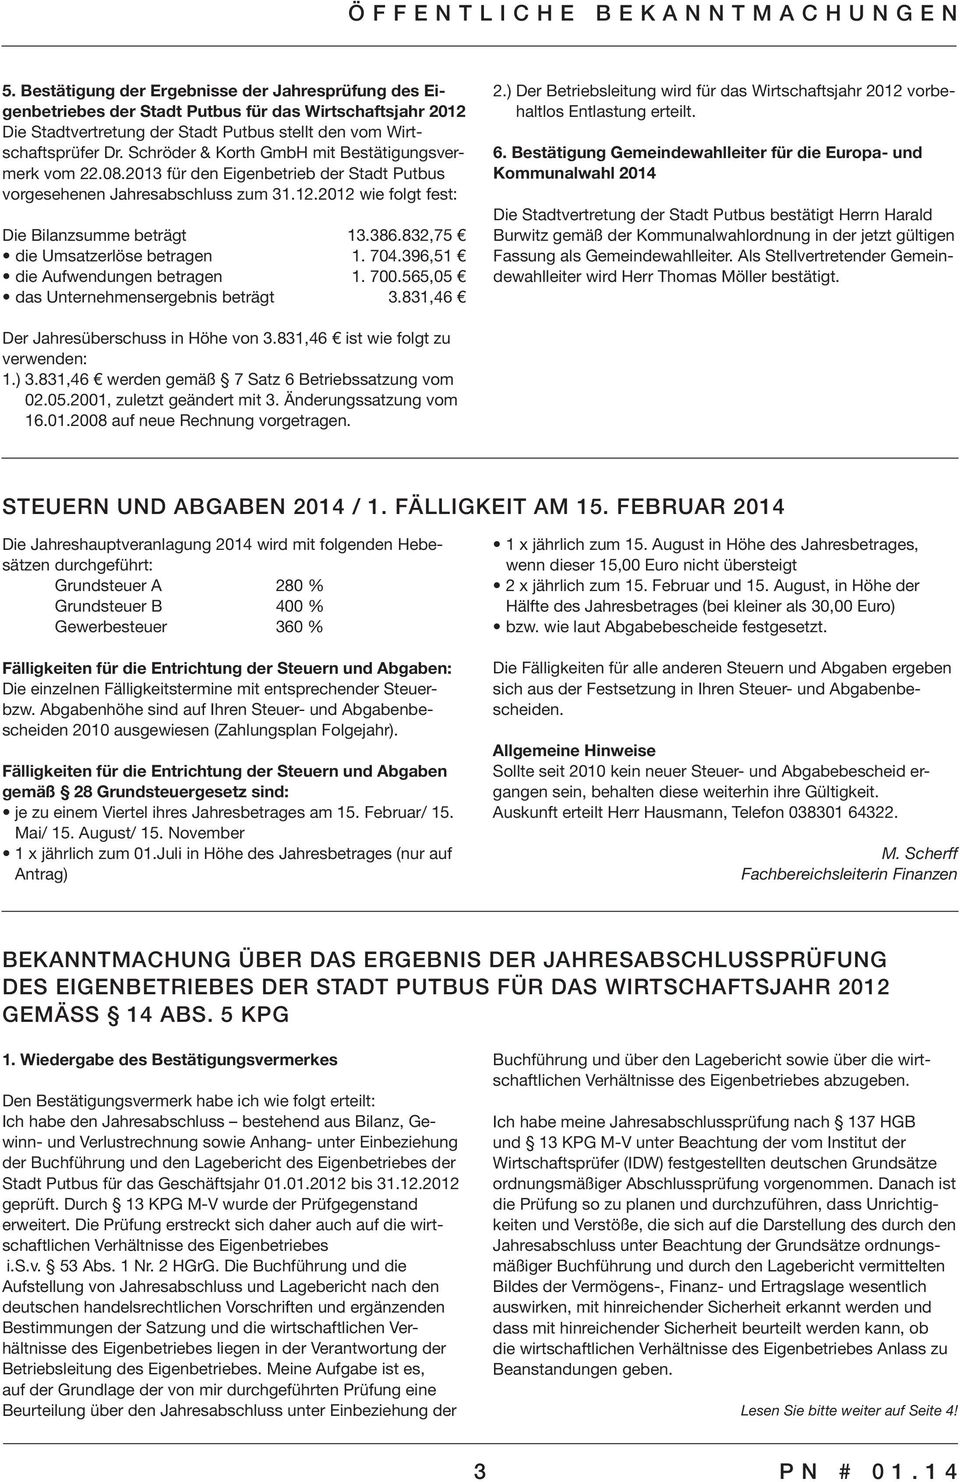 Schröder & Korth GmbH mit Bestätigungsvermerk vom 22.08.2013 für den Eigenbetrieb der Stadt Putbus vorgesehenen Jahresabschluss zum 31.12.2012 wie folgt fest: Die Bilanzsumme beträgt 13.386.